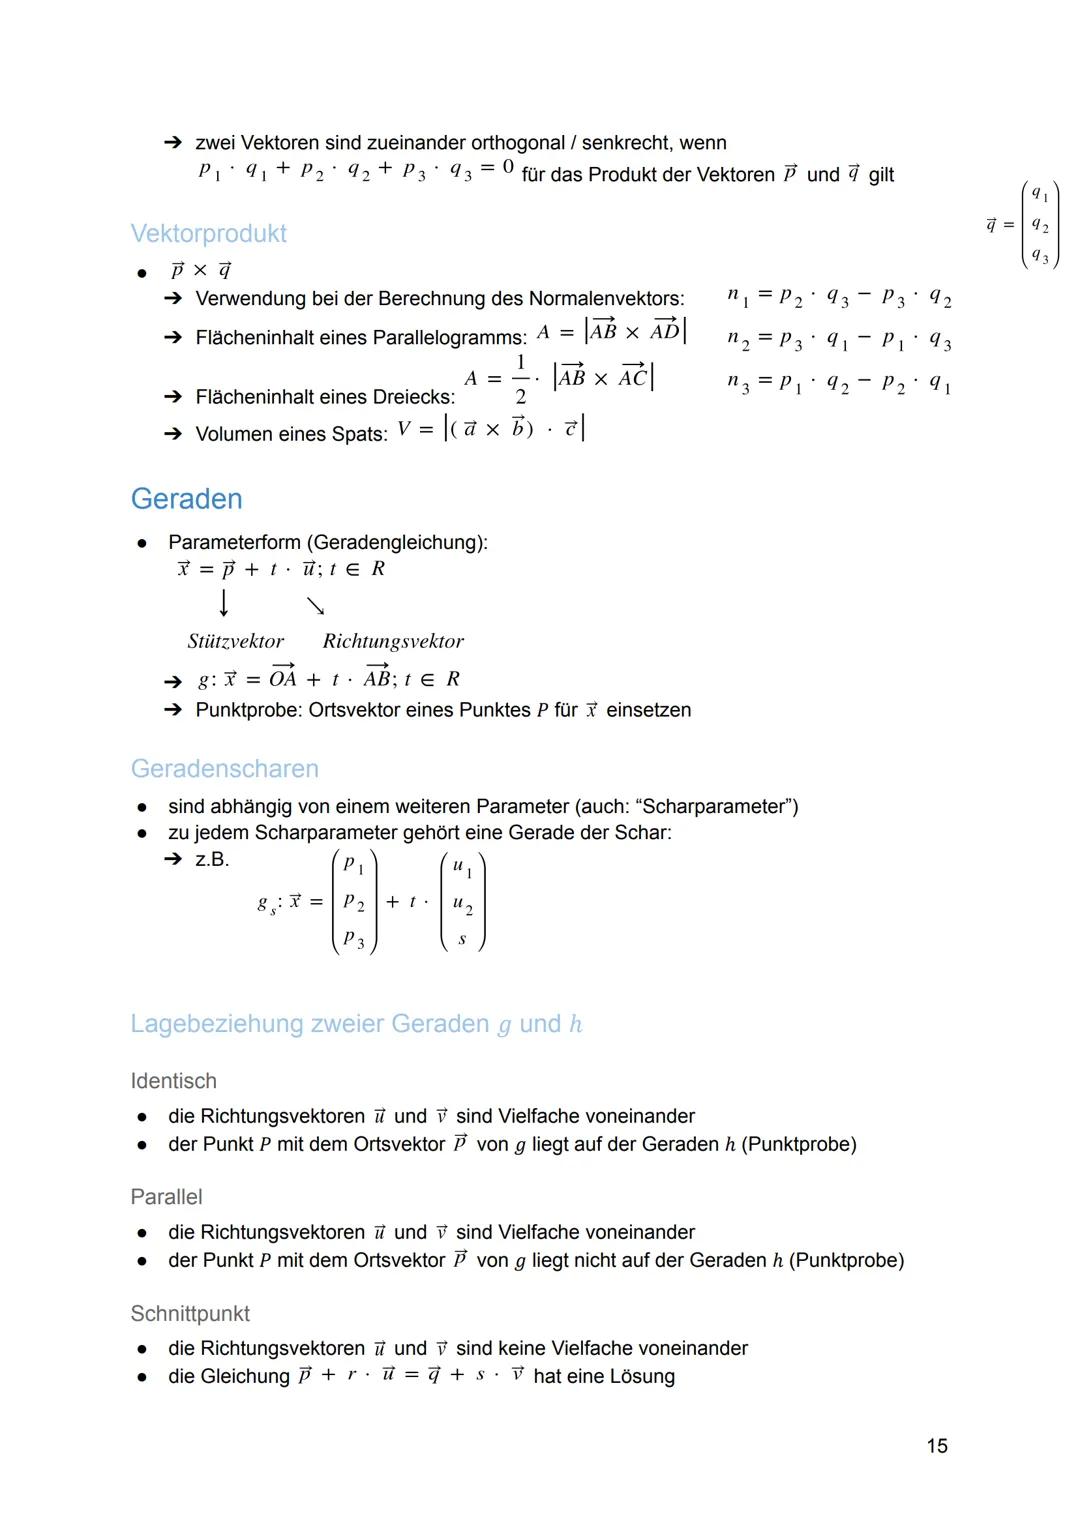 
<h2 id="analysis">Analysis</h2>
<h3 id="funktionen">Funktionen</h3>
<p>Die ganzrationalen Funktionen n-1 + a₁x¹ + ax; neN heißen auch Polyn